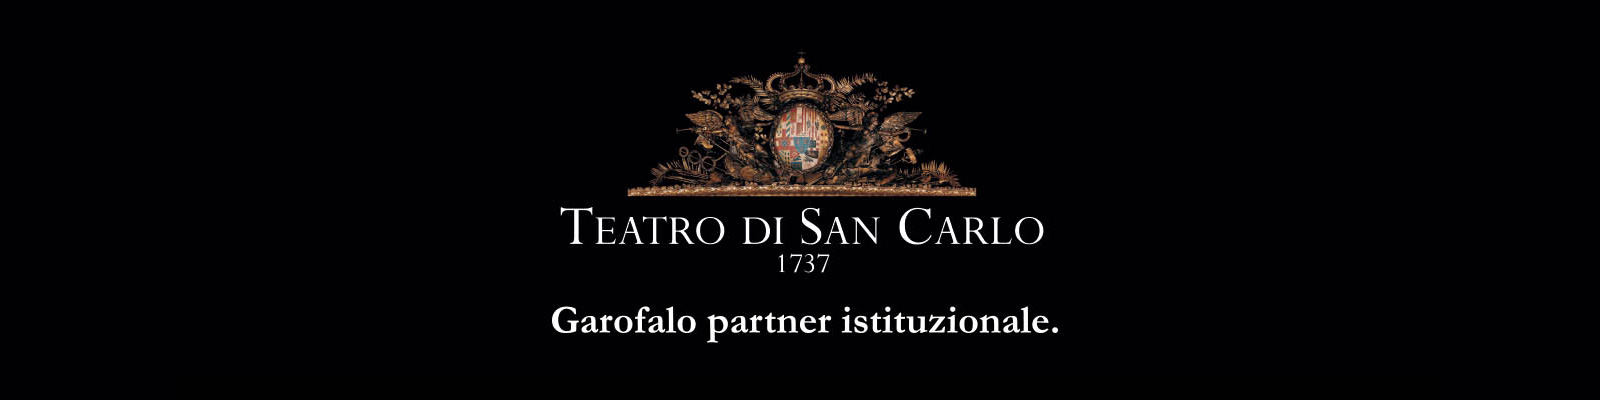 Pasta Garofalo sponsors  S. Carlo Theatre